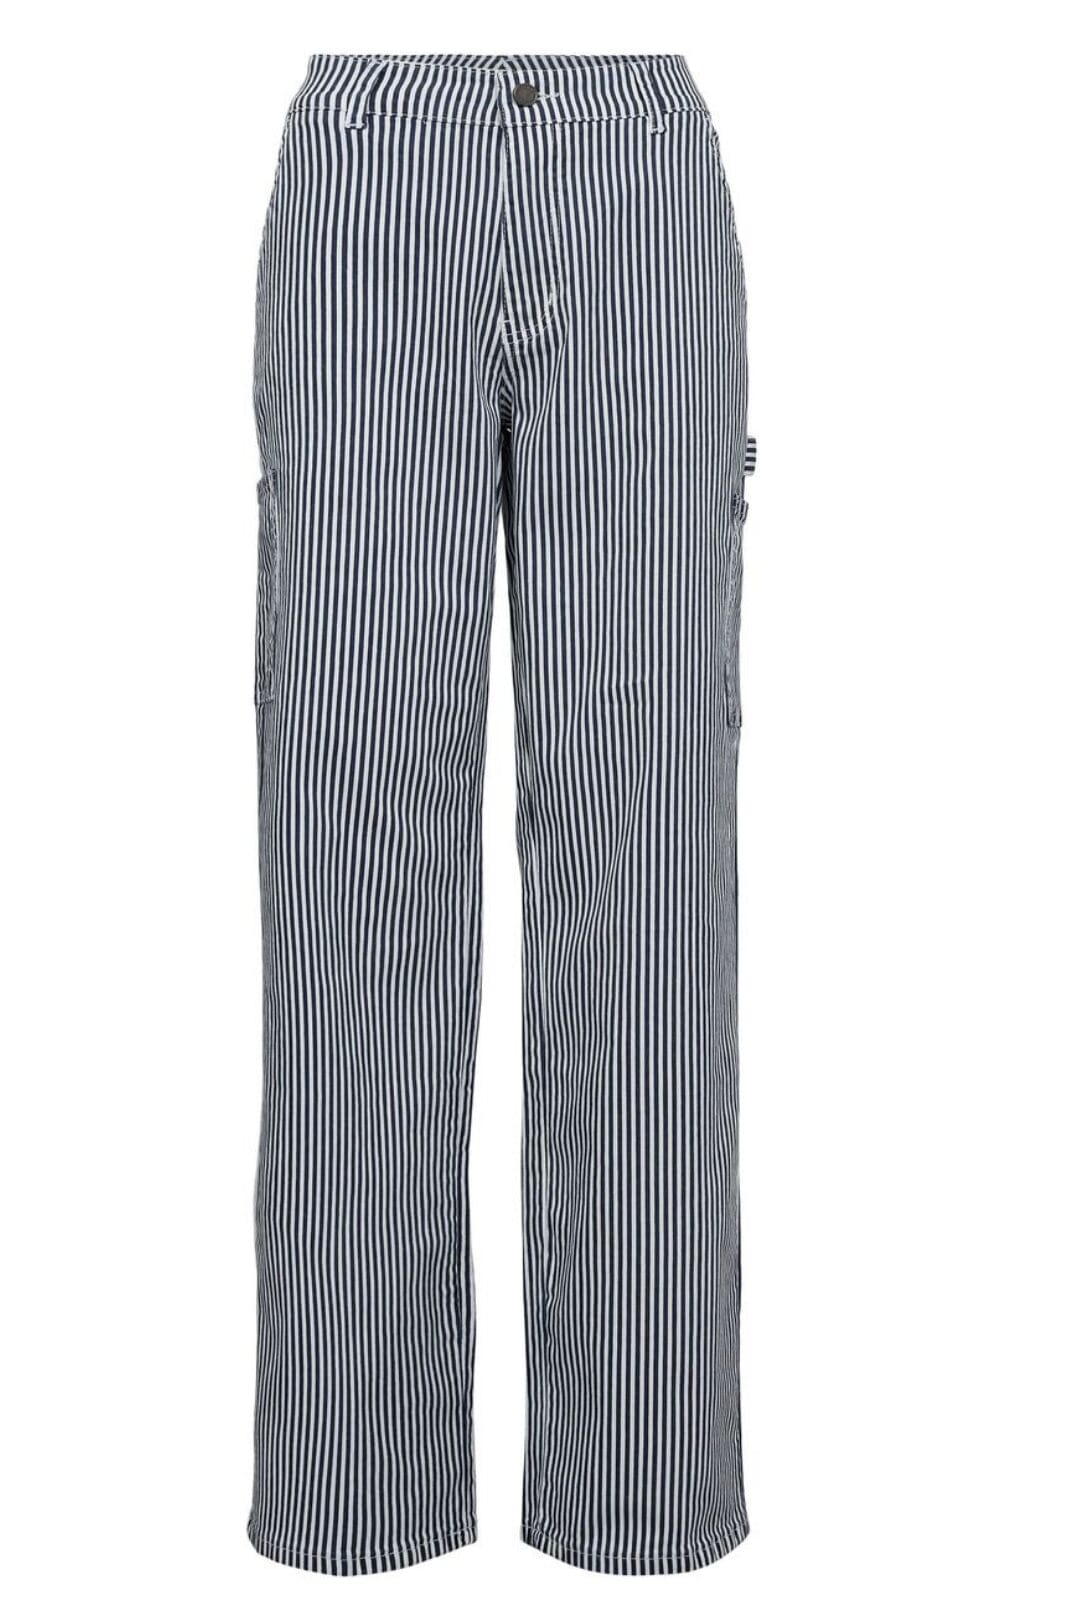 Sofie Schnoor - Snos250 Trousers - Dark Blue Striped Bukser 